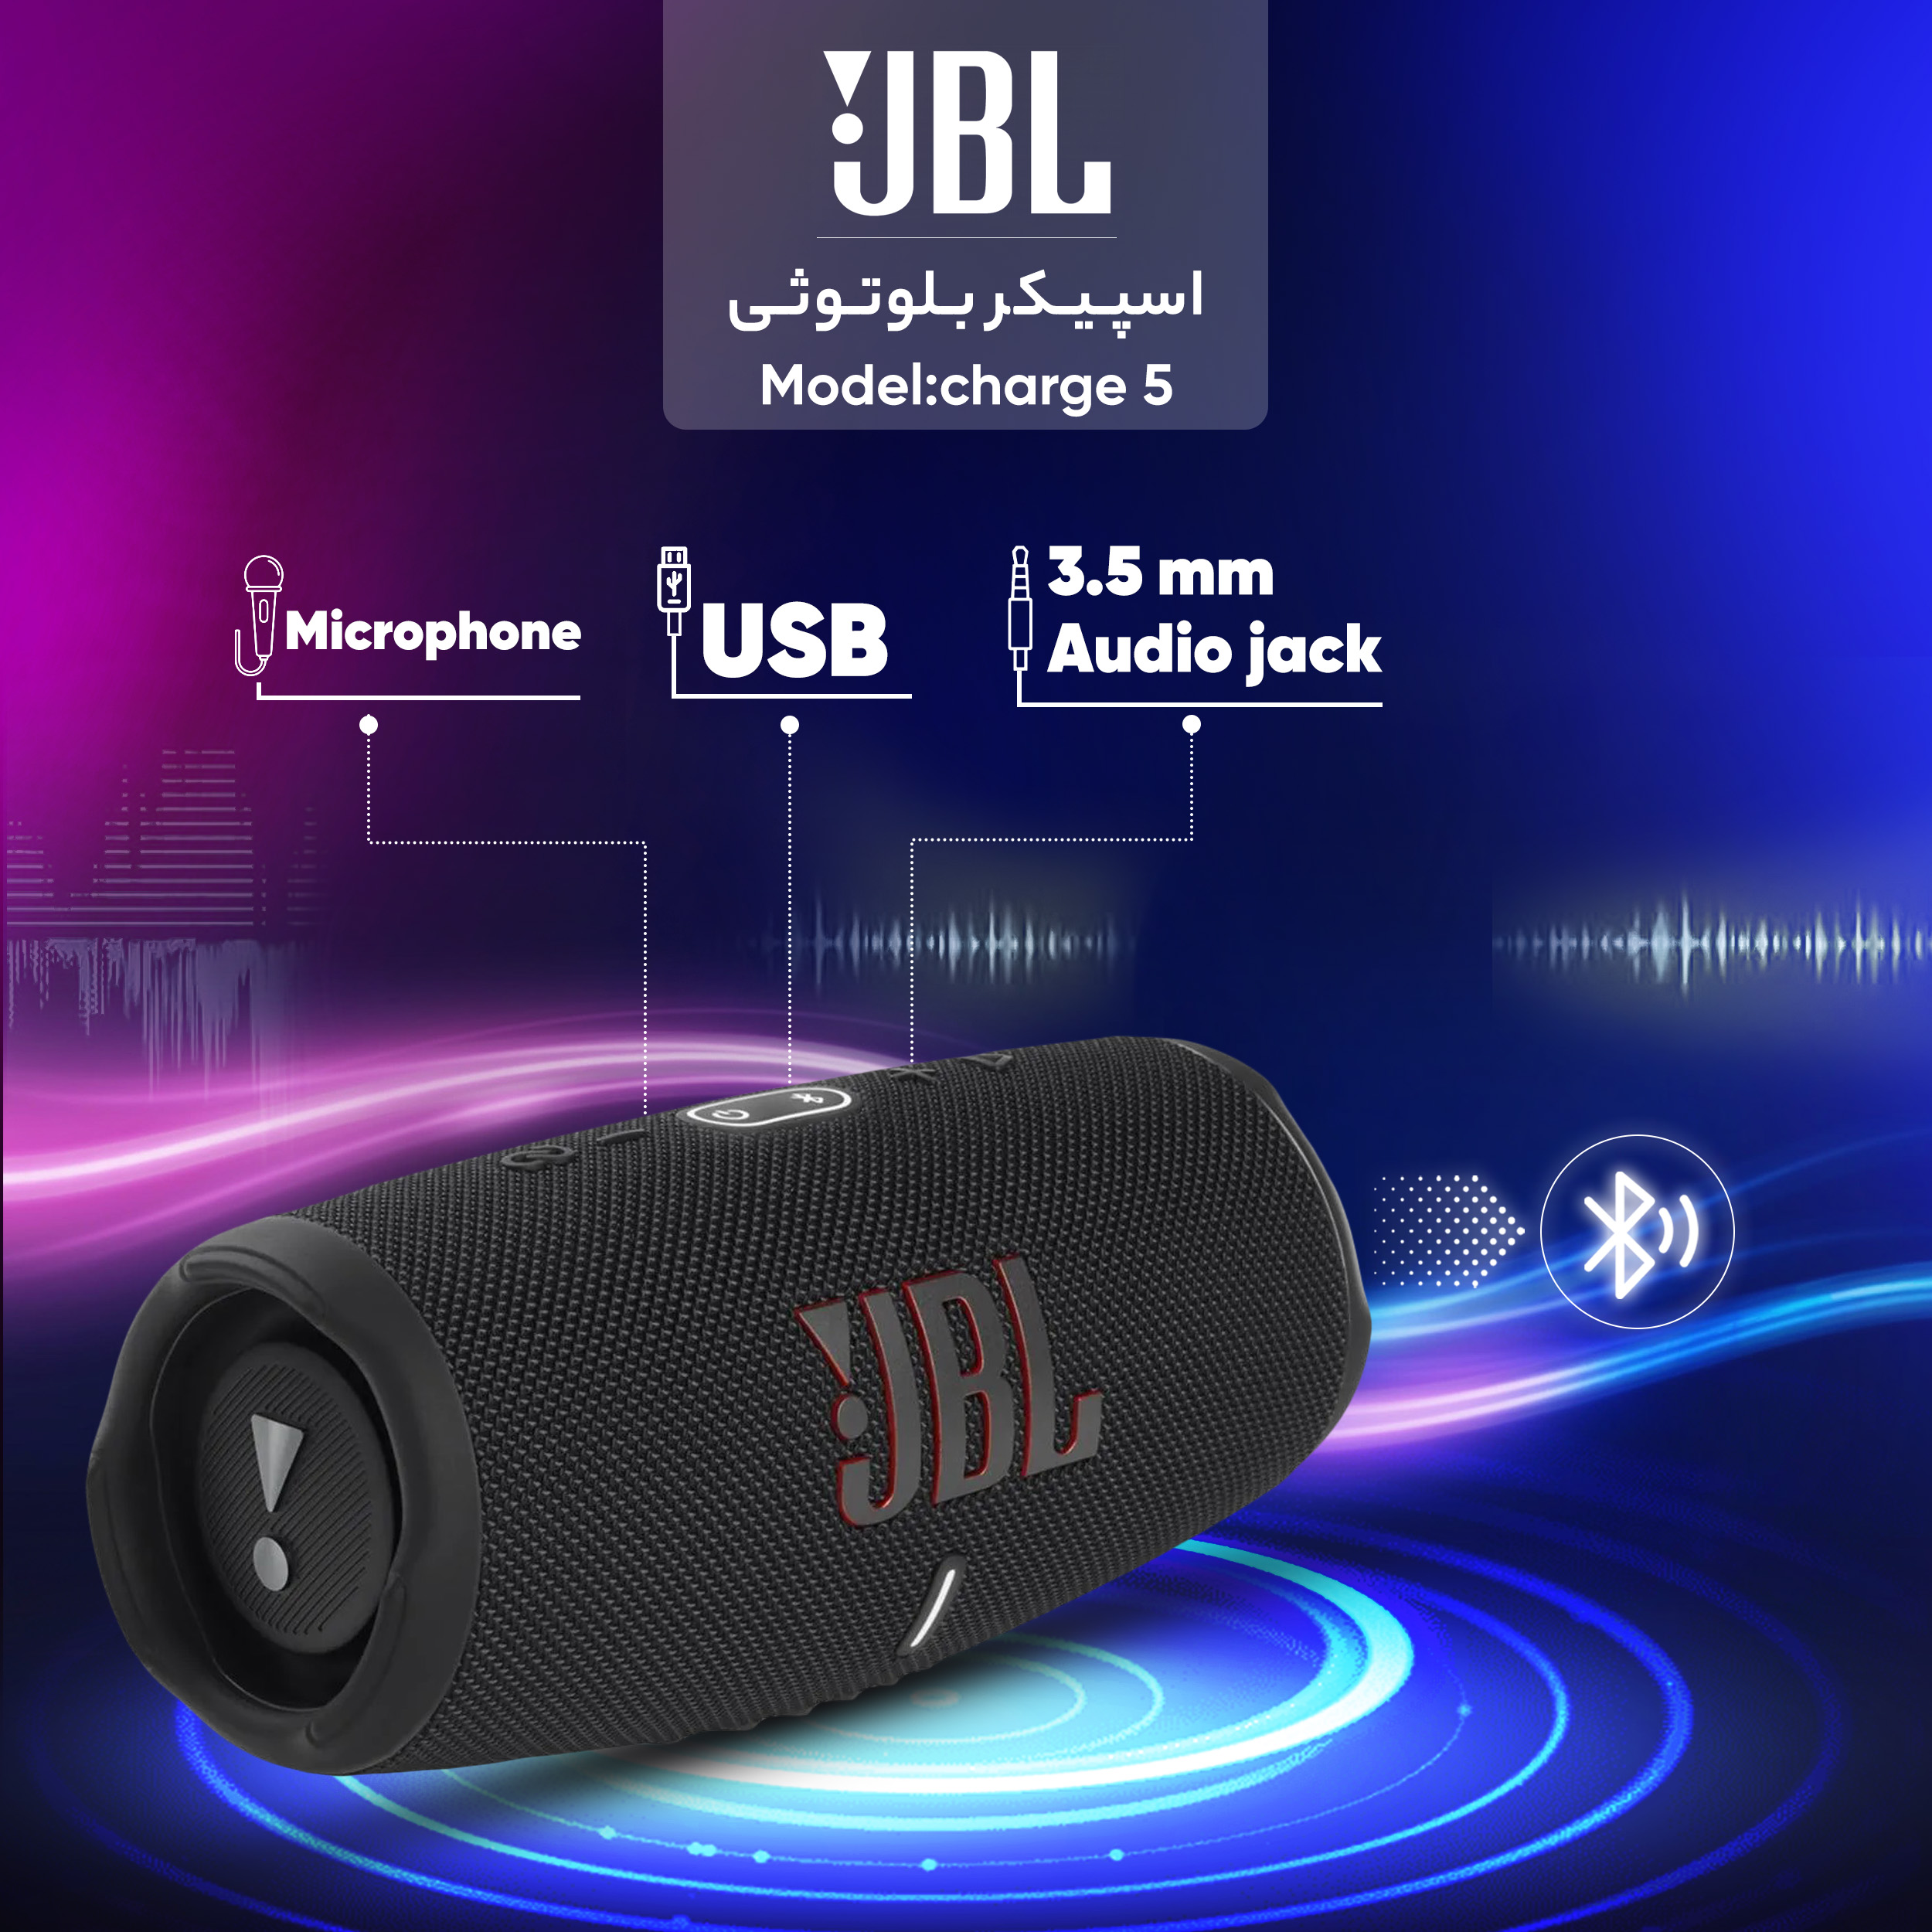 اسپیکر جی بی ال (JBL) مدل charge 5